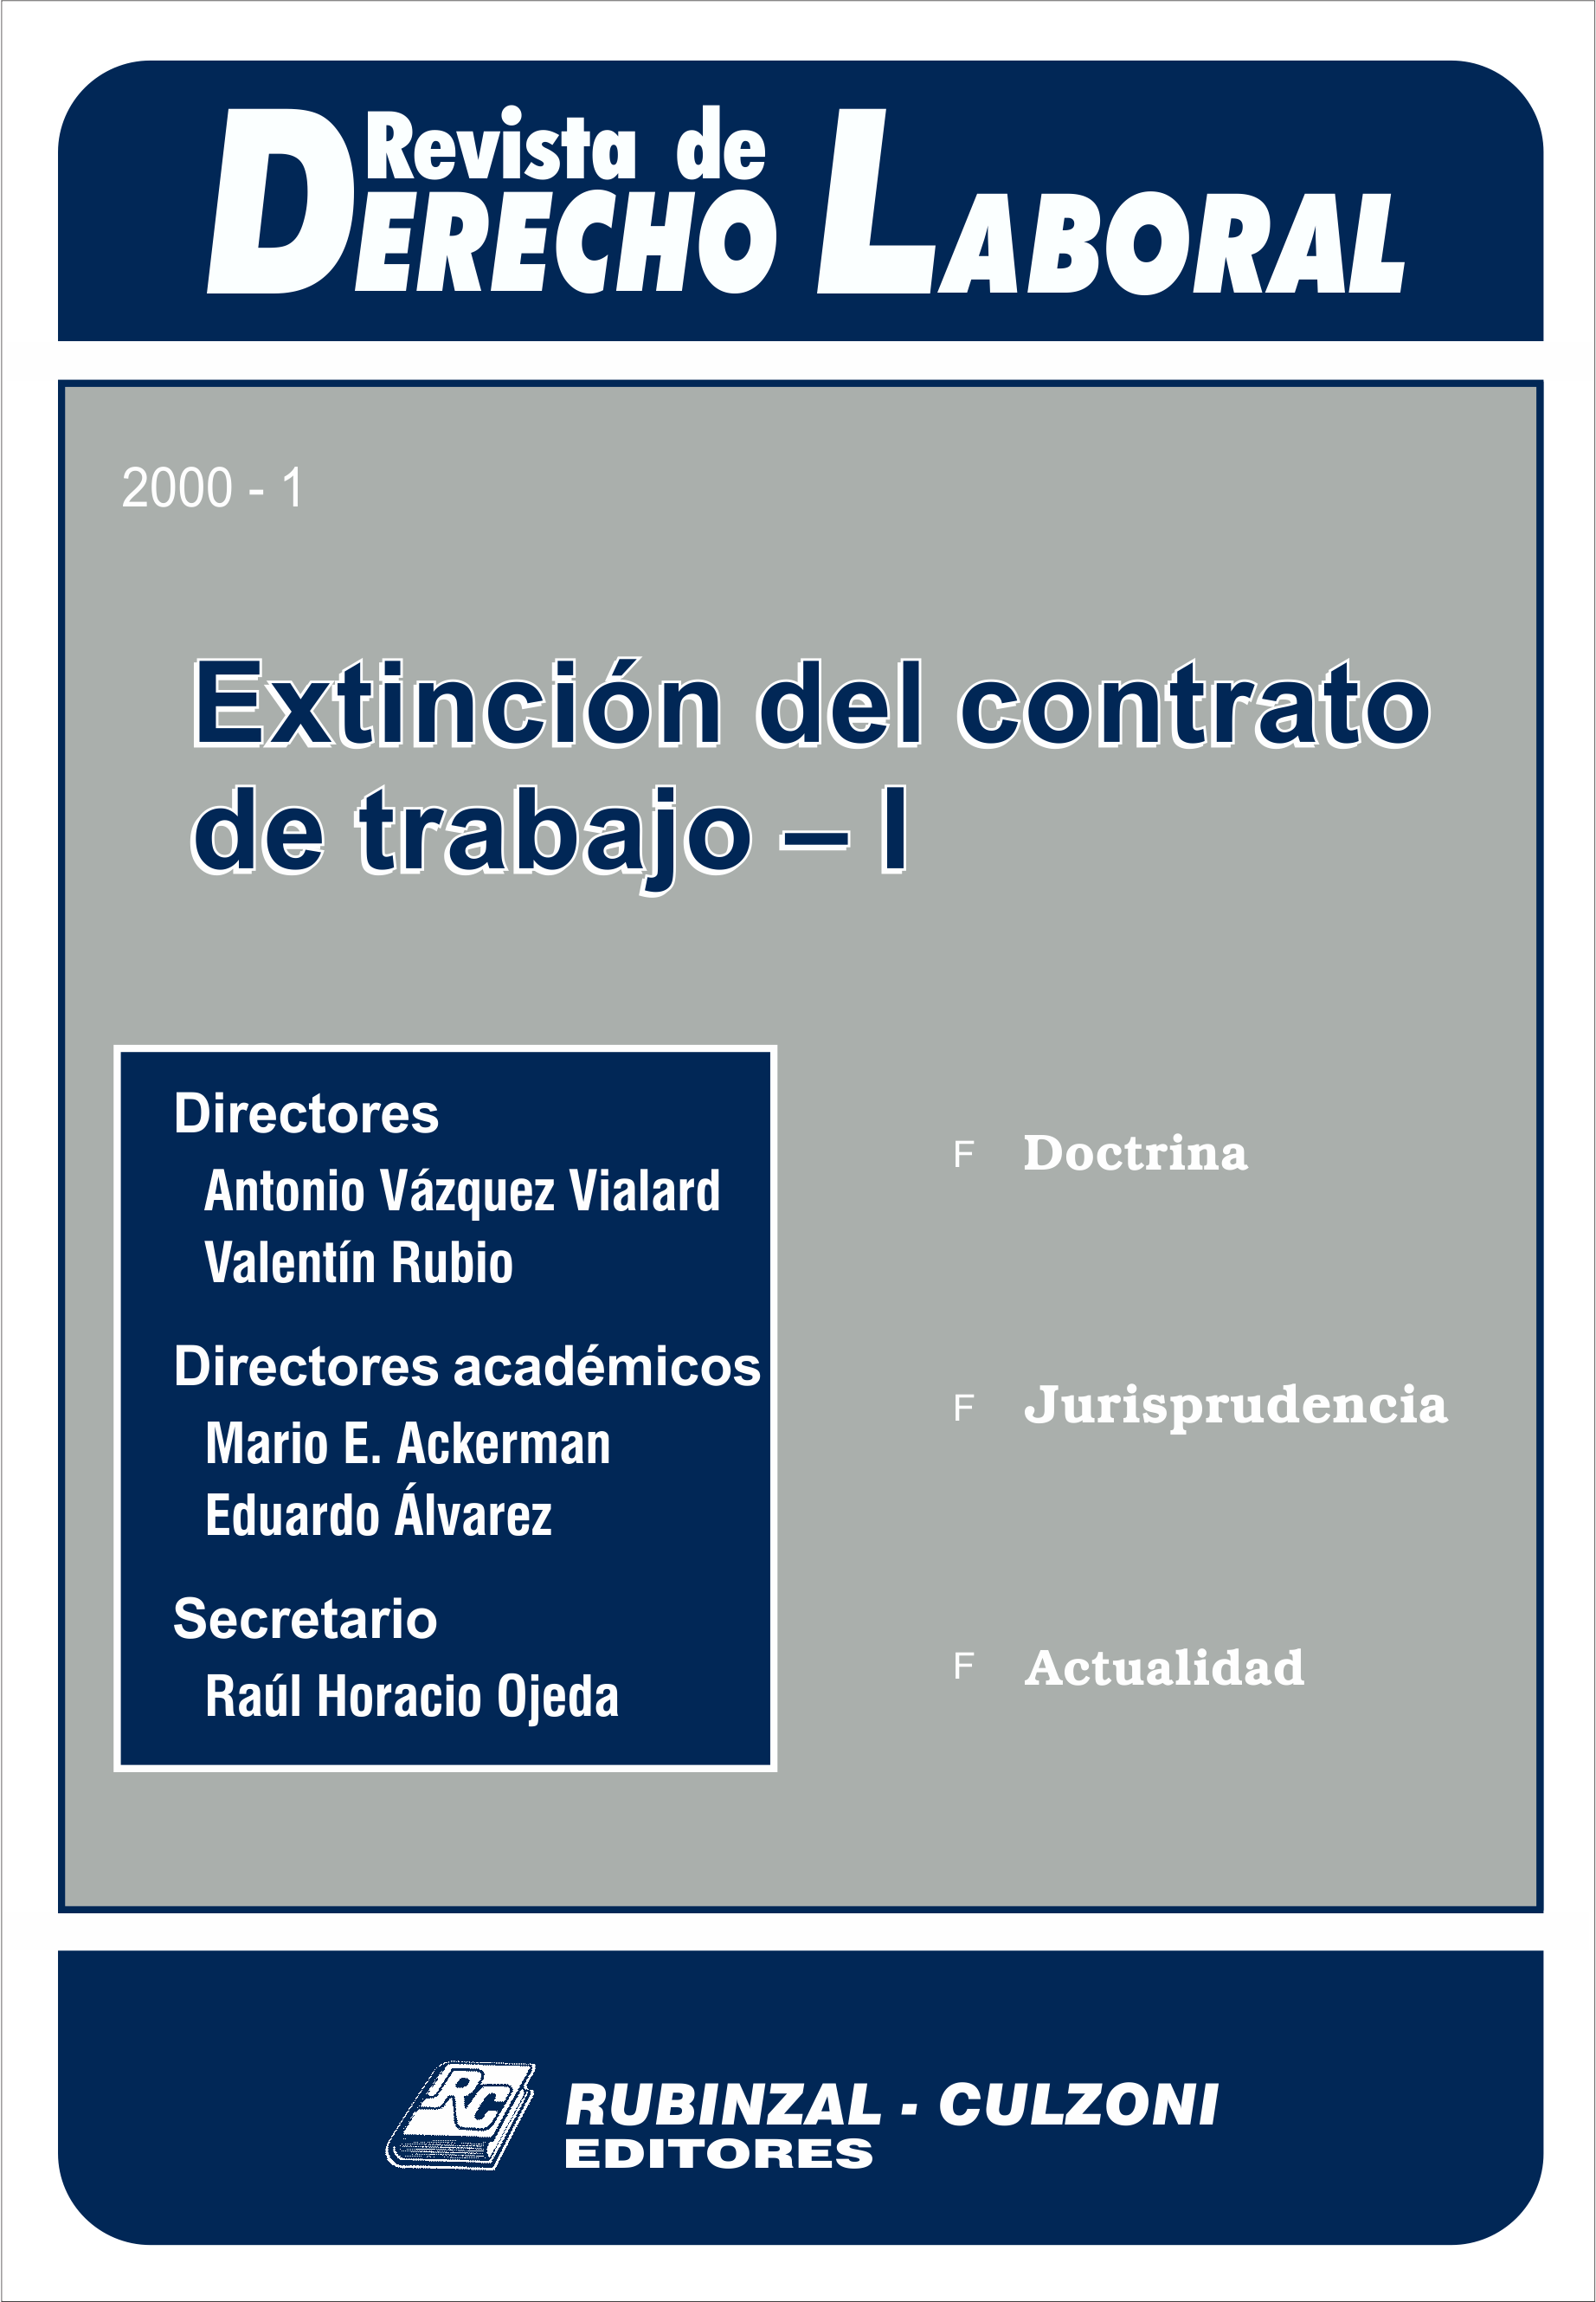 Revista de Derecho Laboral - Extinción del contrato de trabajo - I